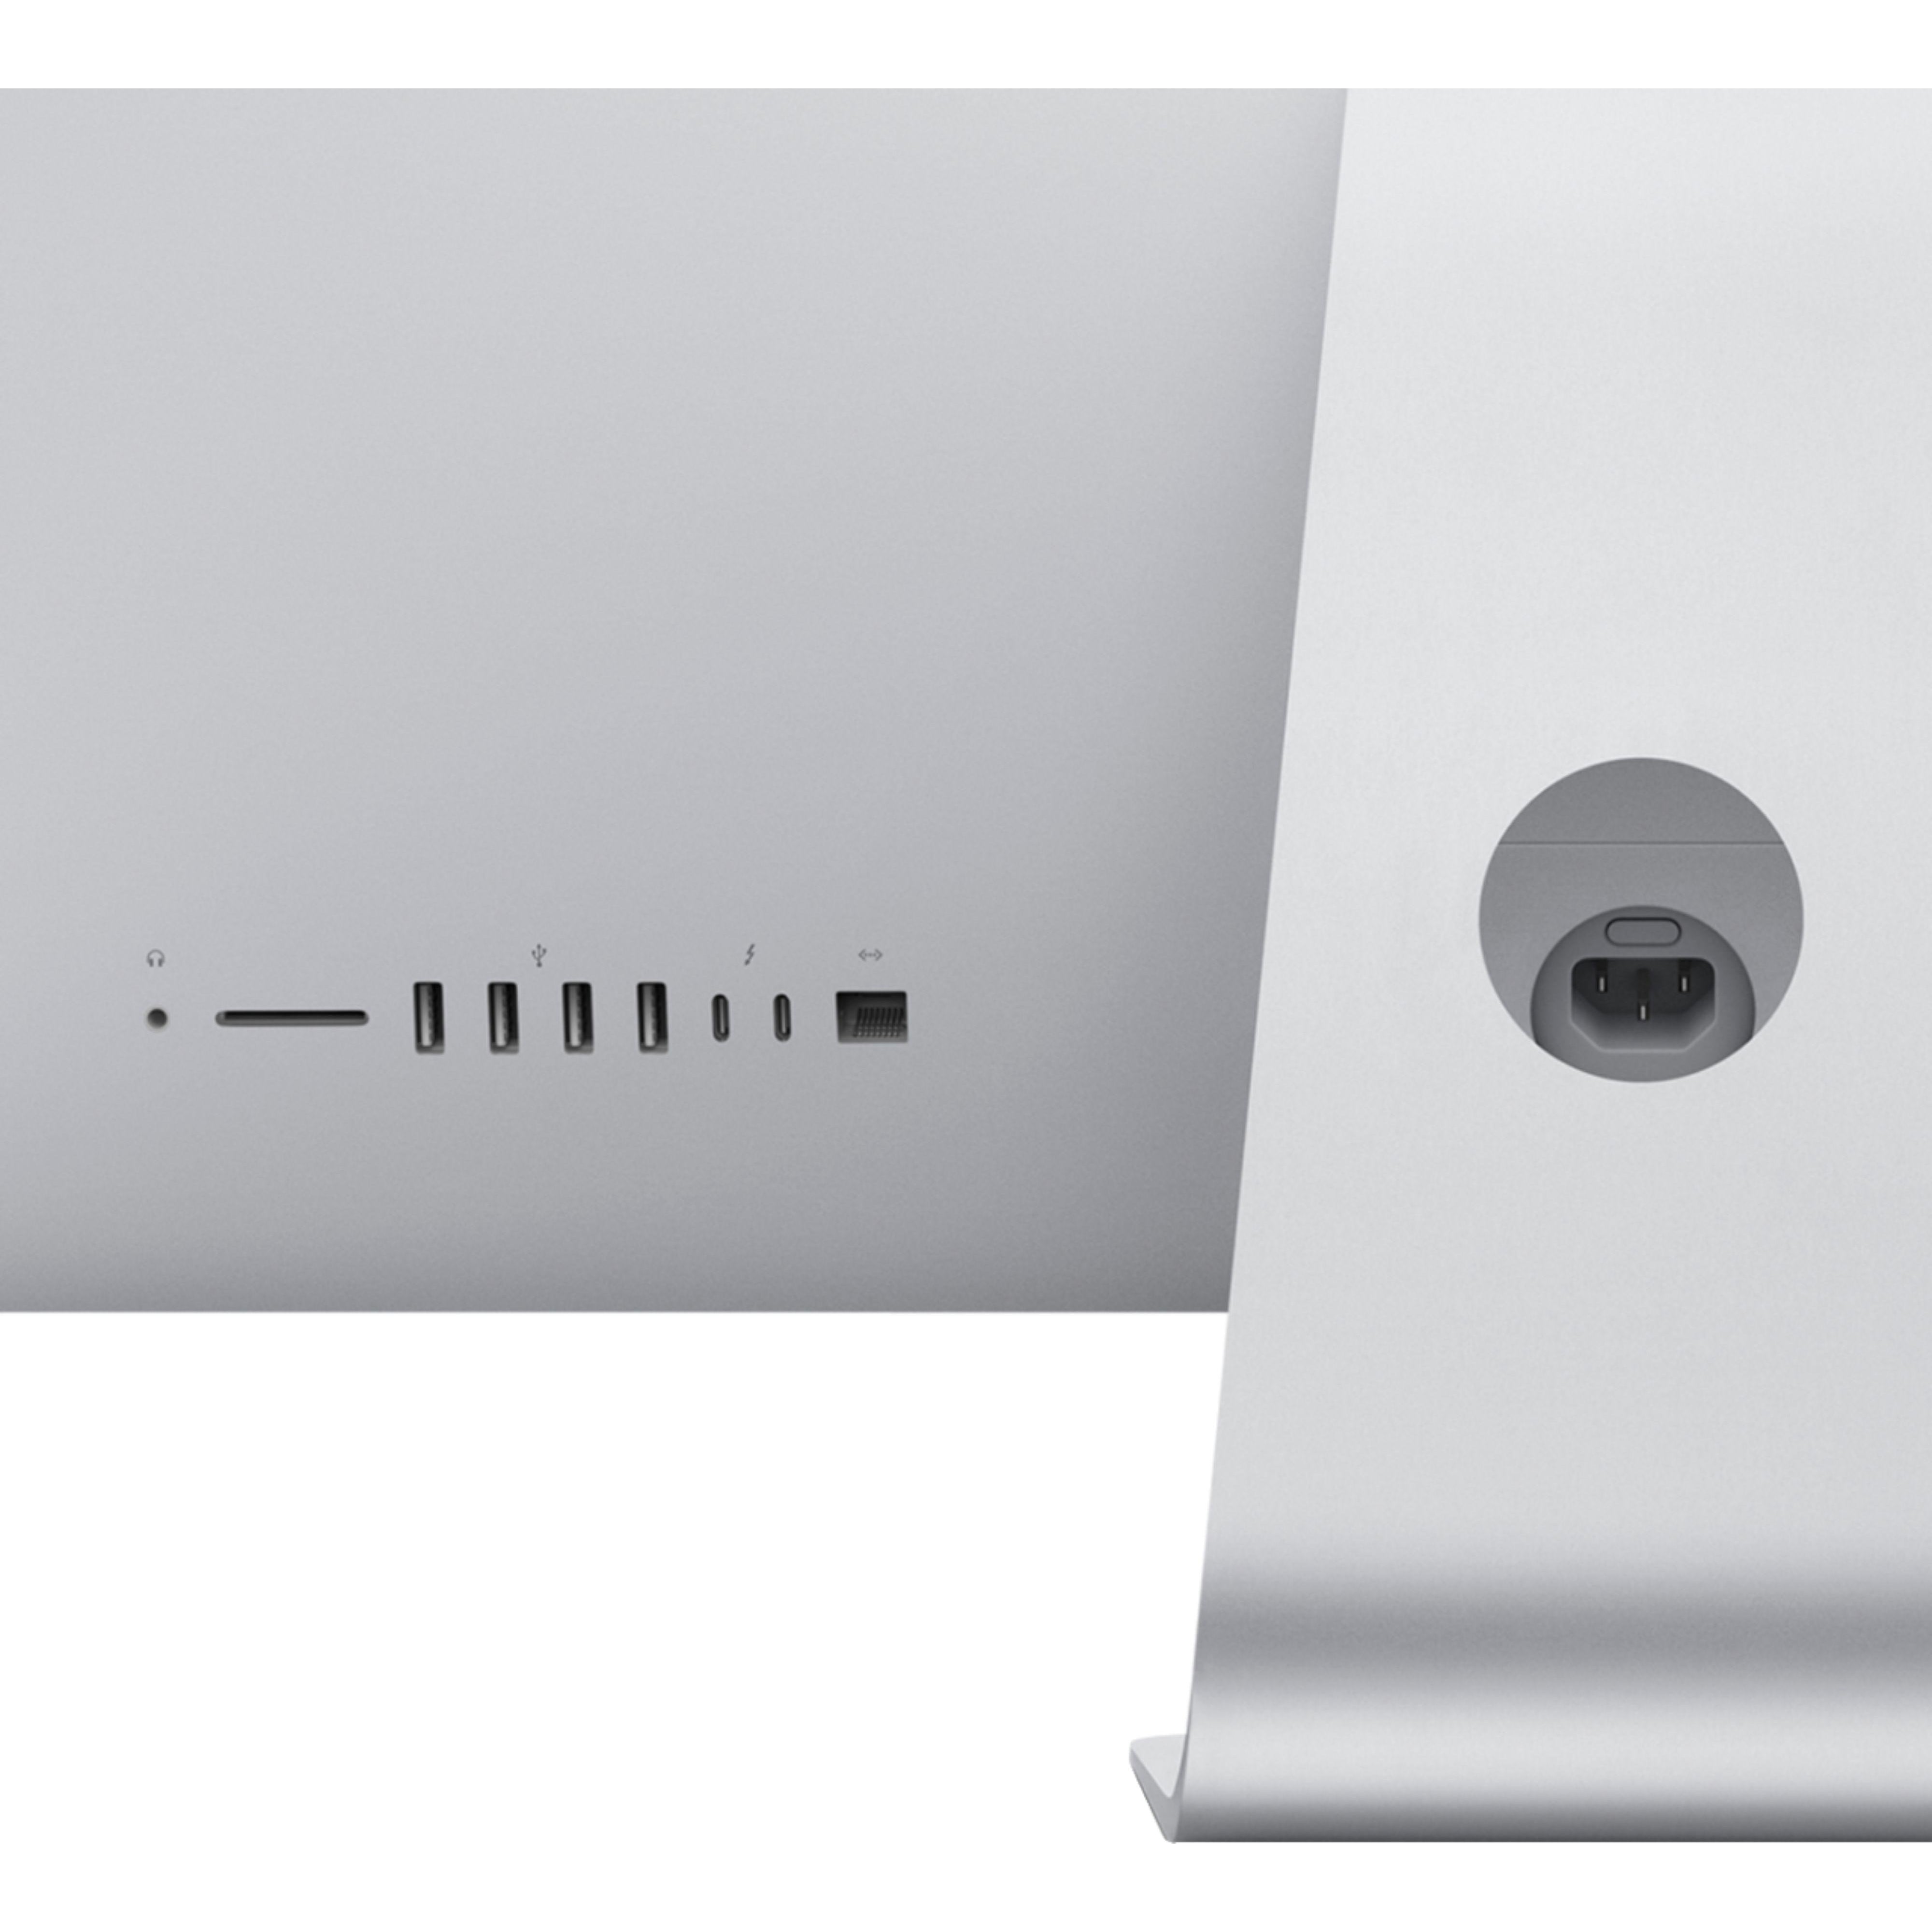 Apple iMac 27'' MXWV2LL/A (2020), Intel Core i7 3.8 GHz, 8GB RAM, 512GB SSD, Silver